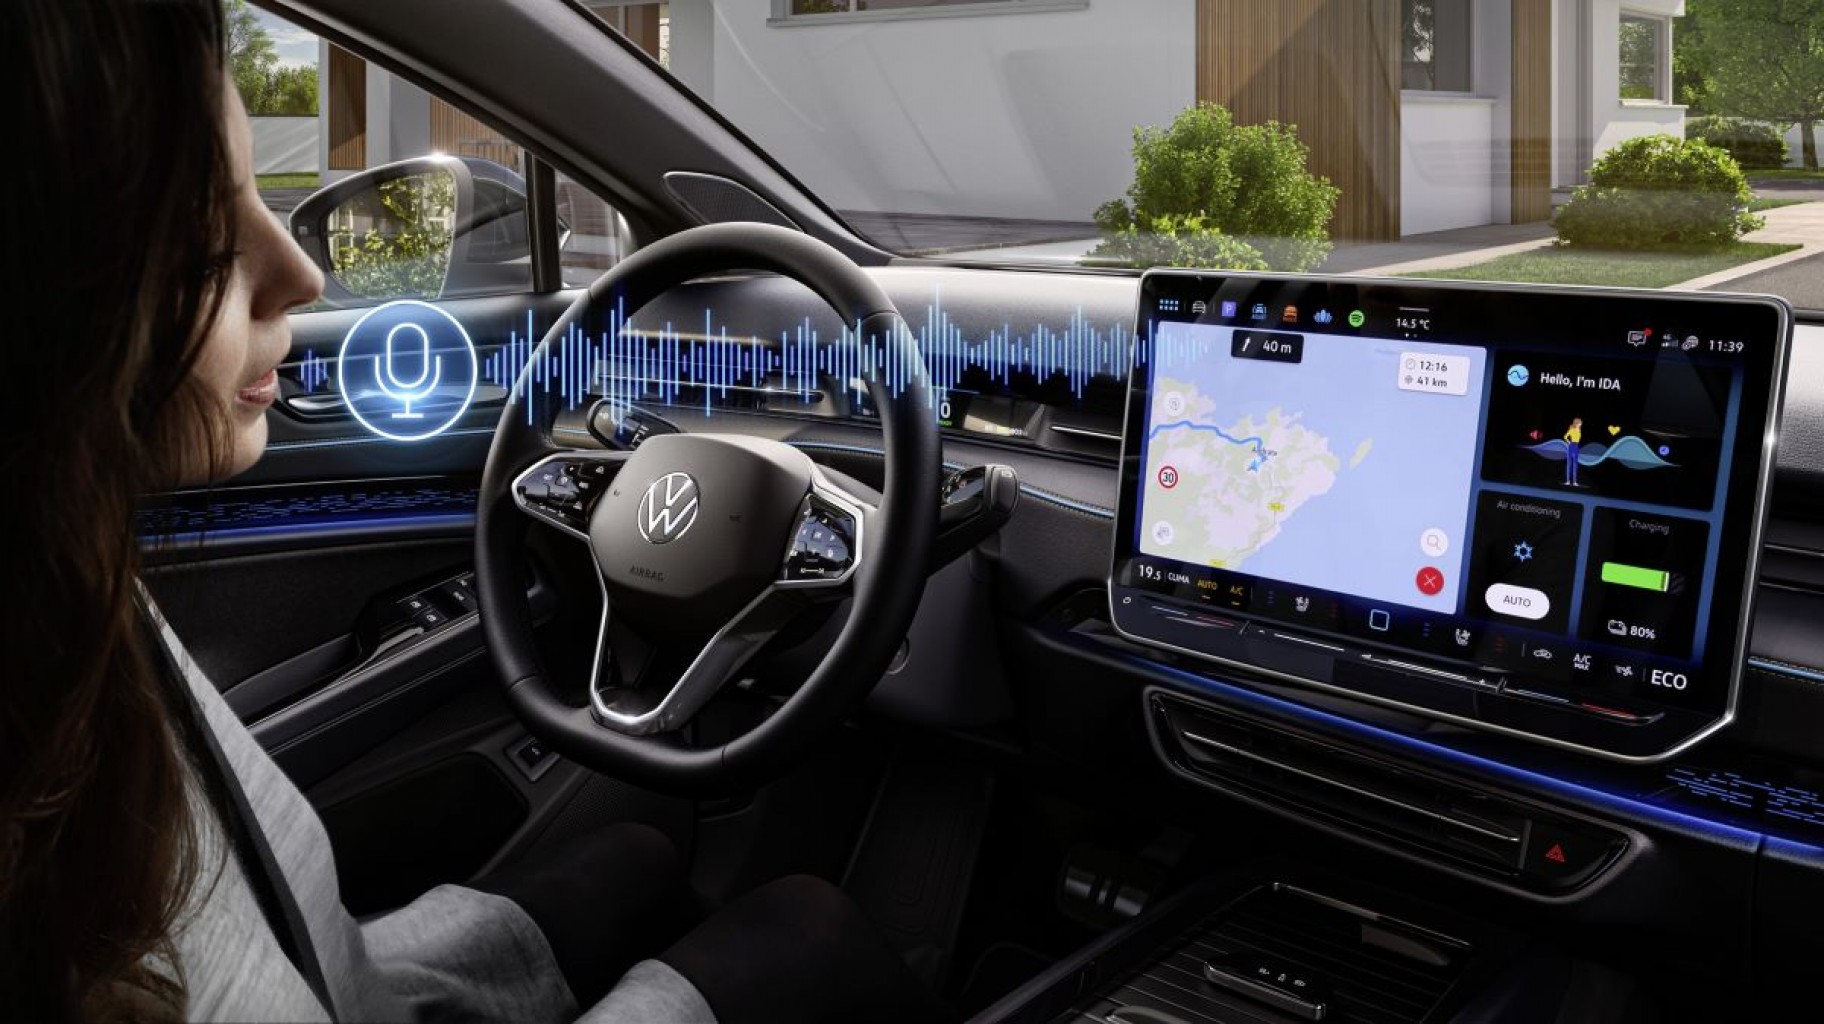 Volkswagen revela el nuevo Jetta, mientras equipa sus vehículos con inteligencia artificial